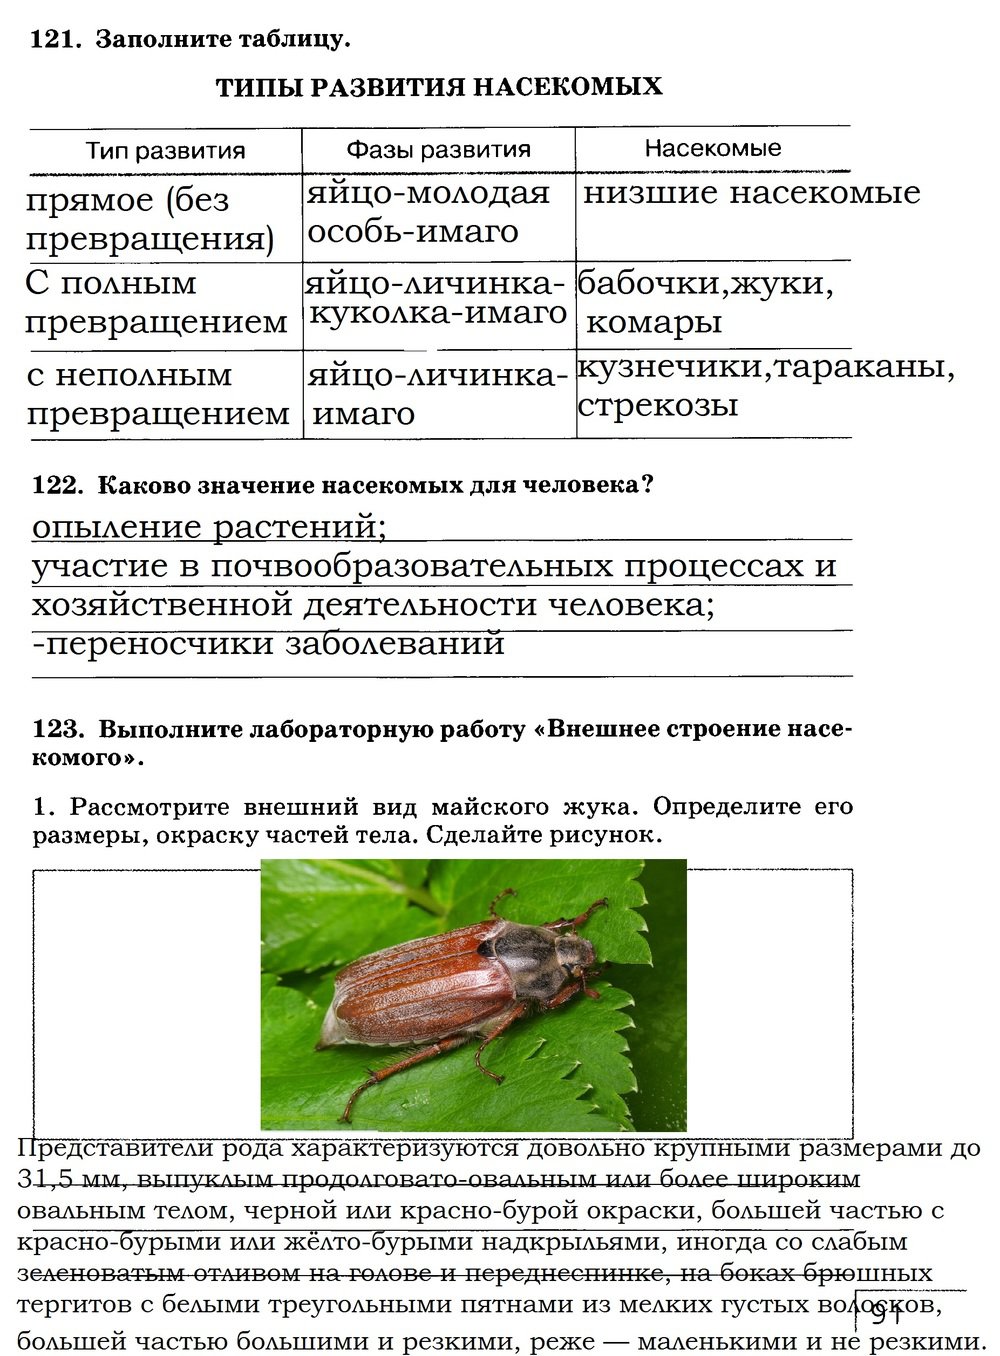 гдз 7 класс рабочая тетрадь страница 91 биология Захаров, Сонин